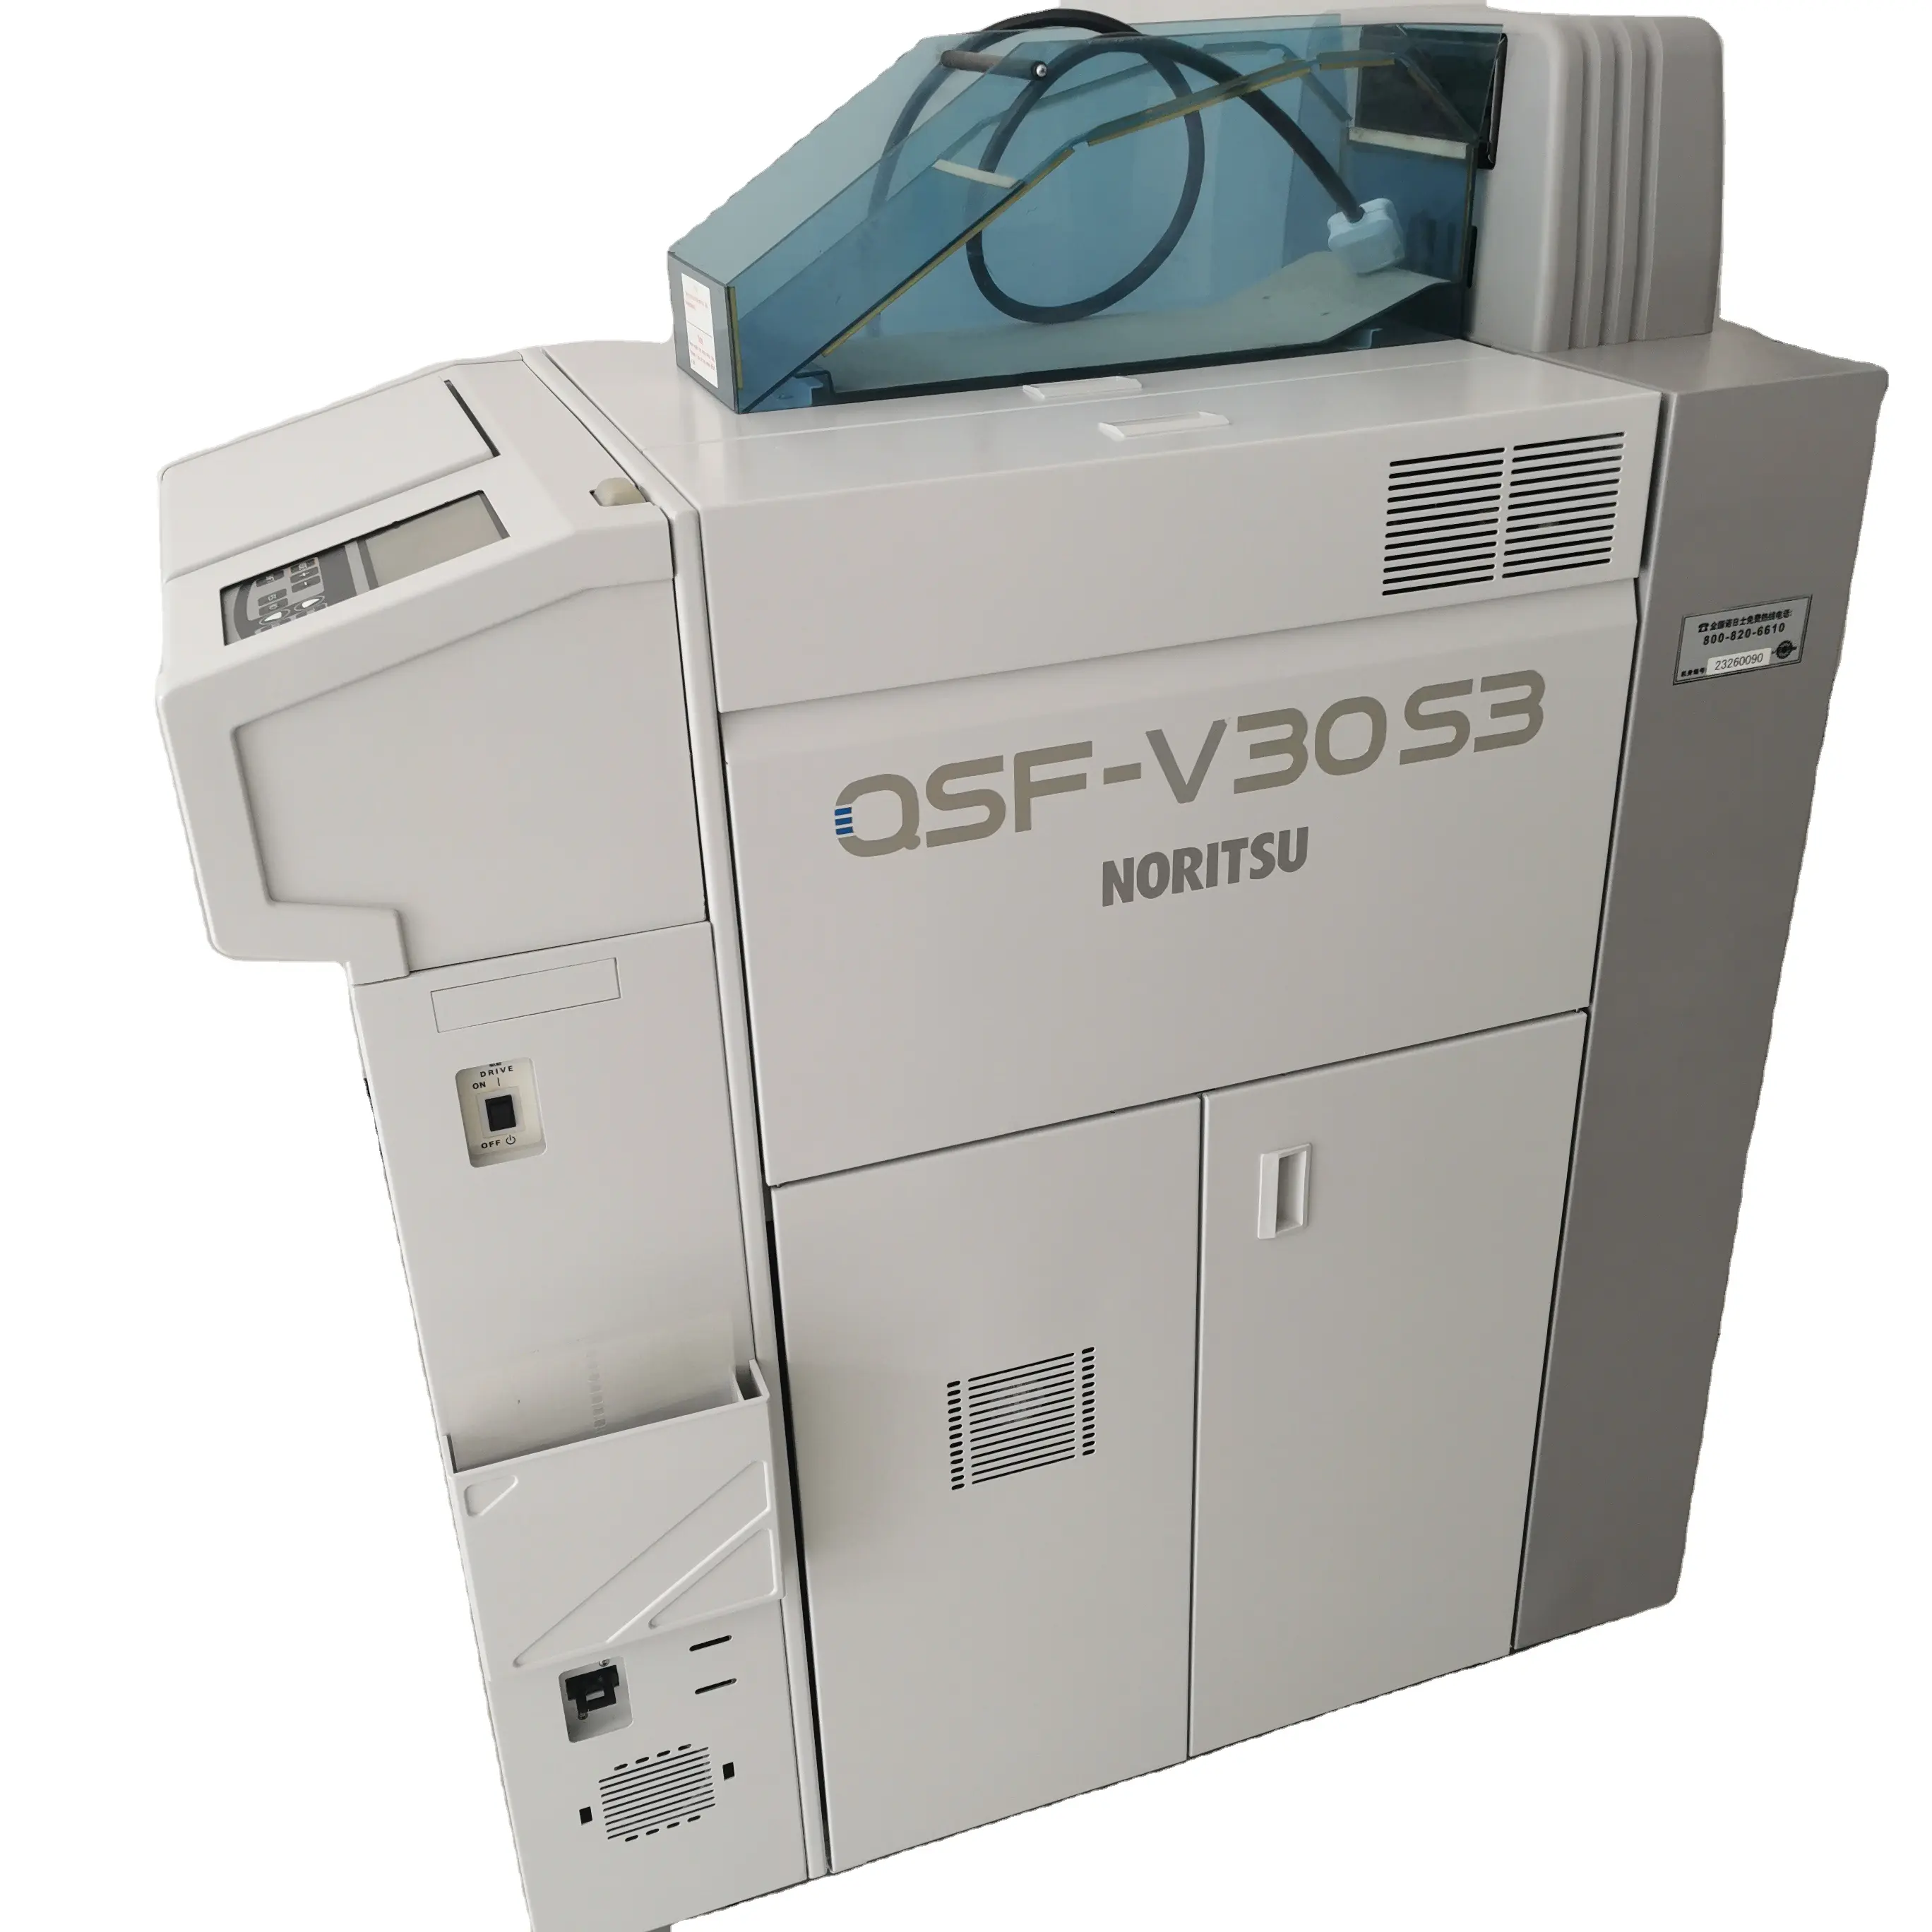 Usato Noritsu film processor minilab QSF-V30S3 ricondizionato